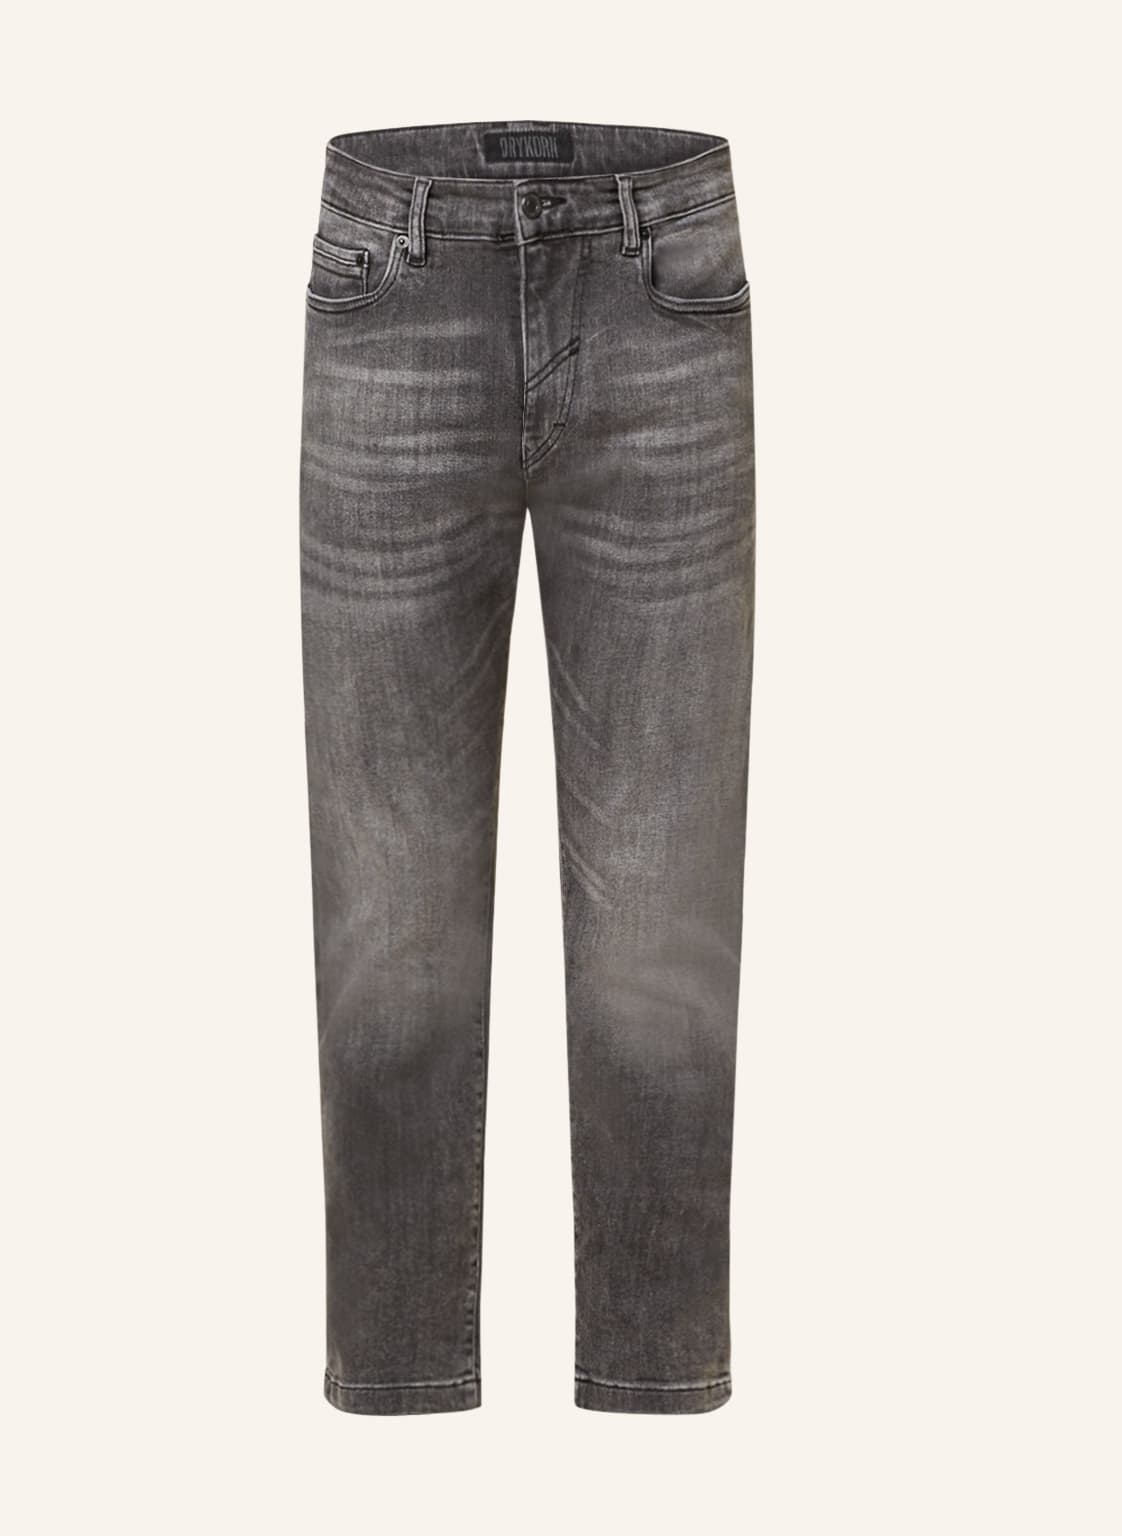 Drykorn Jeans West Extra Slim Fit Mit Verkürzter Beinlänge grau von drykorn